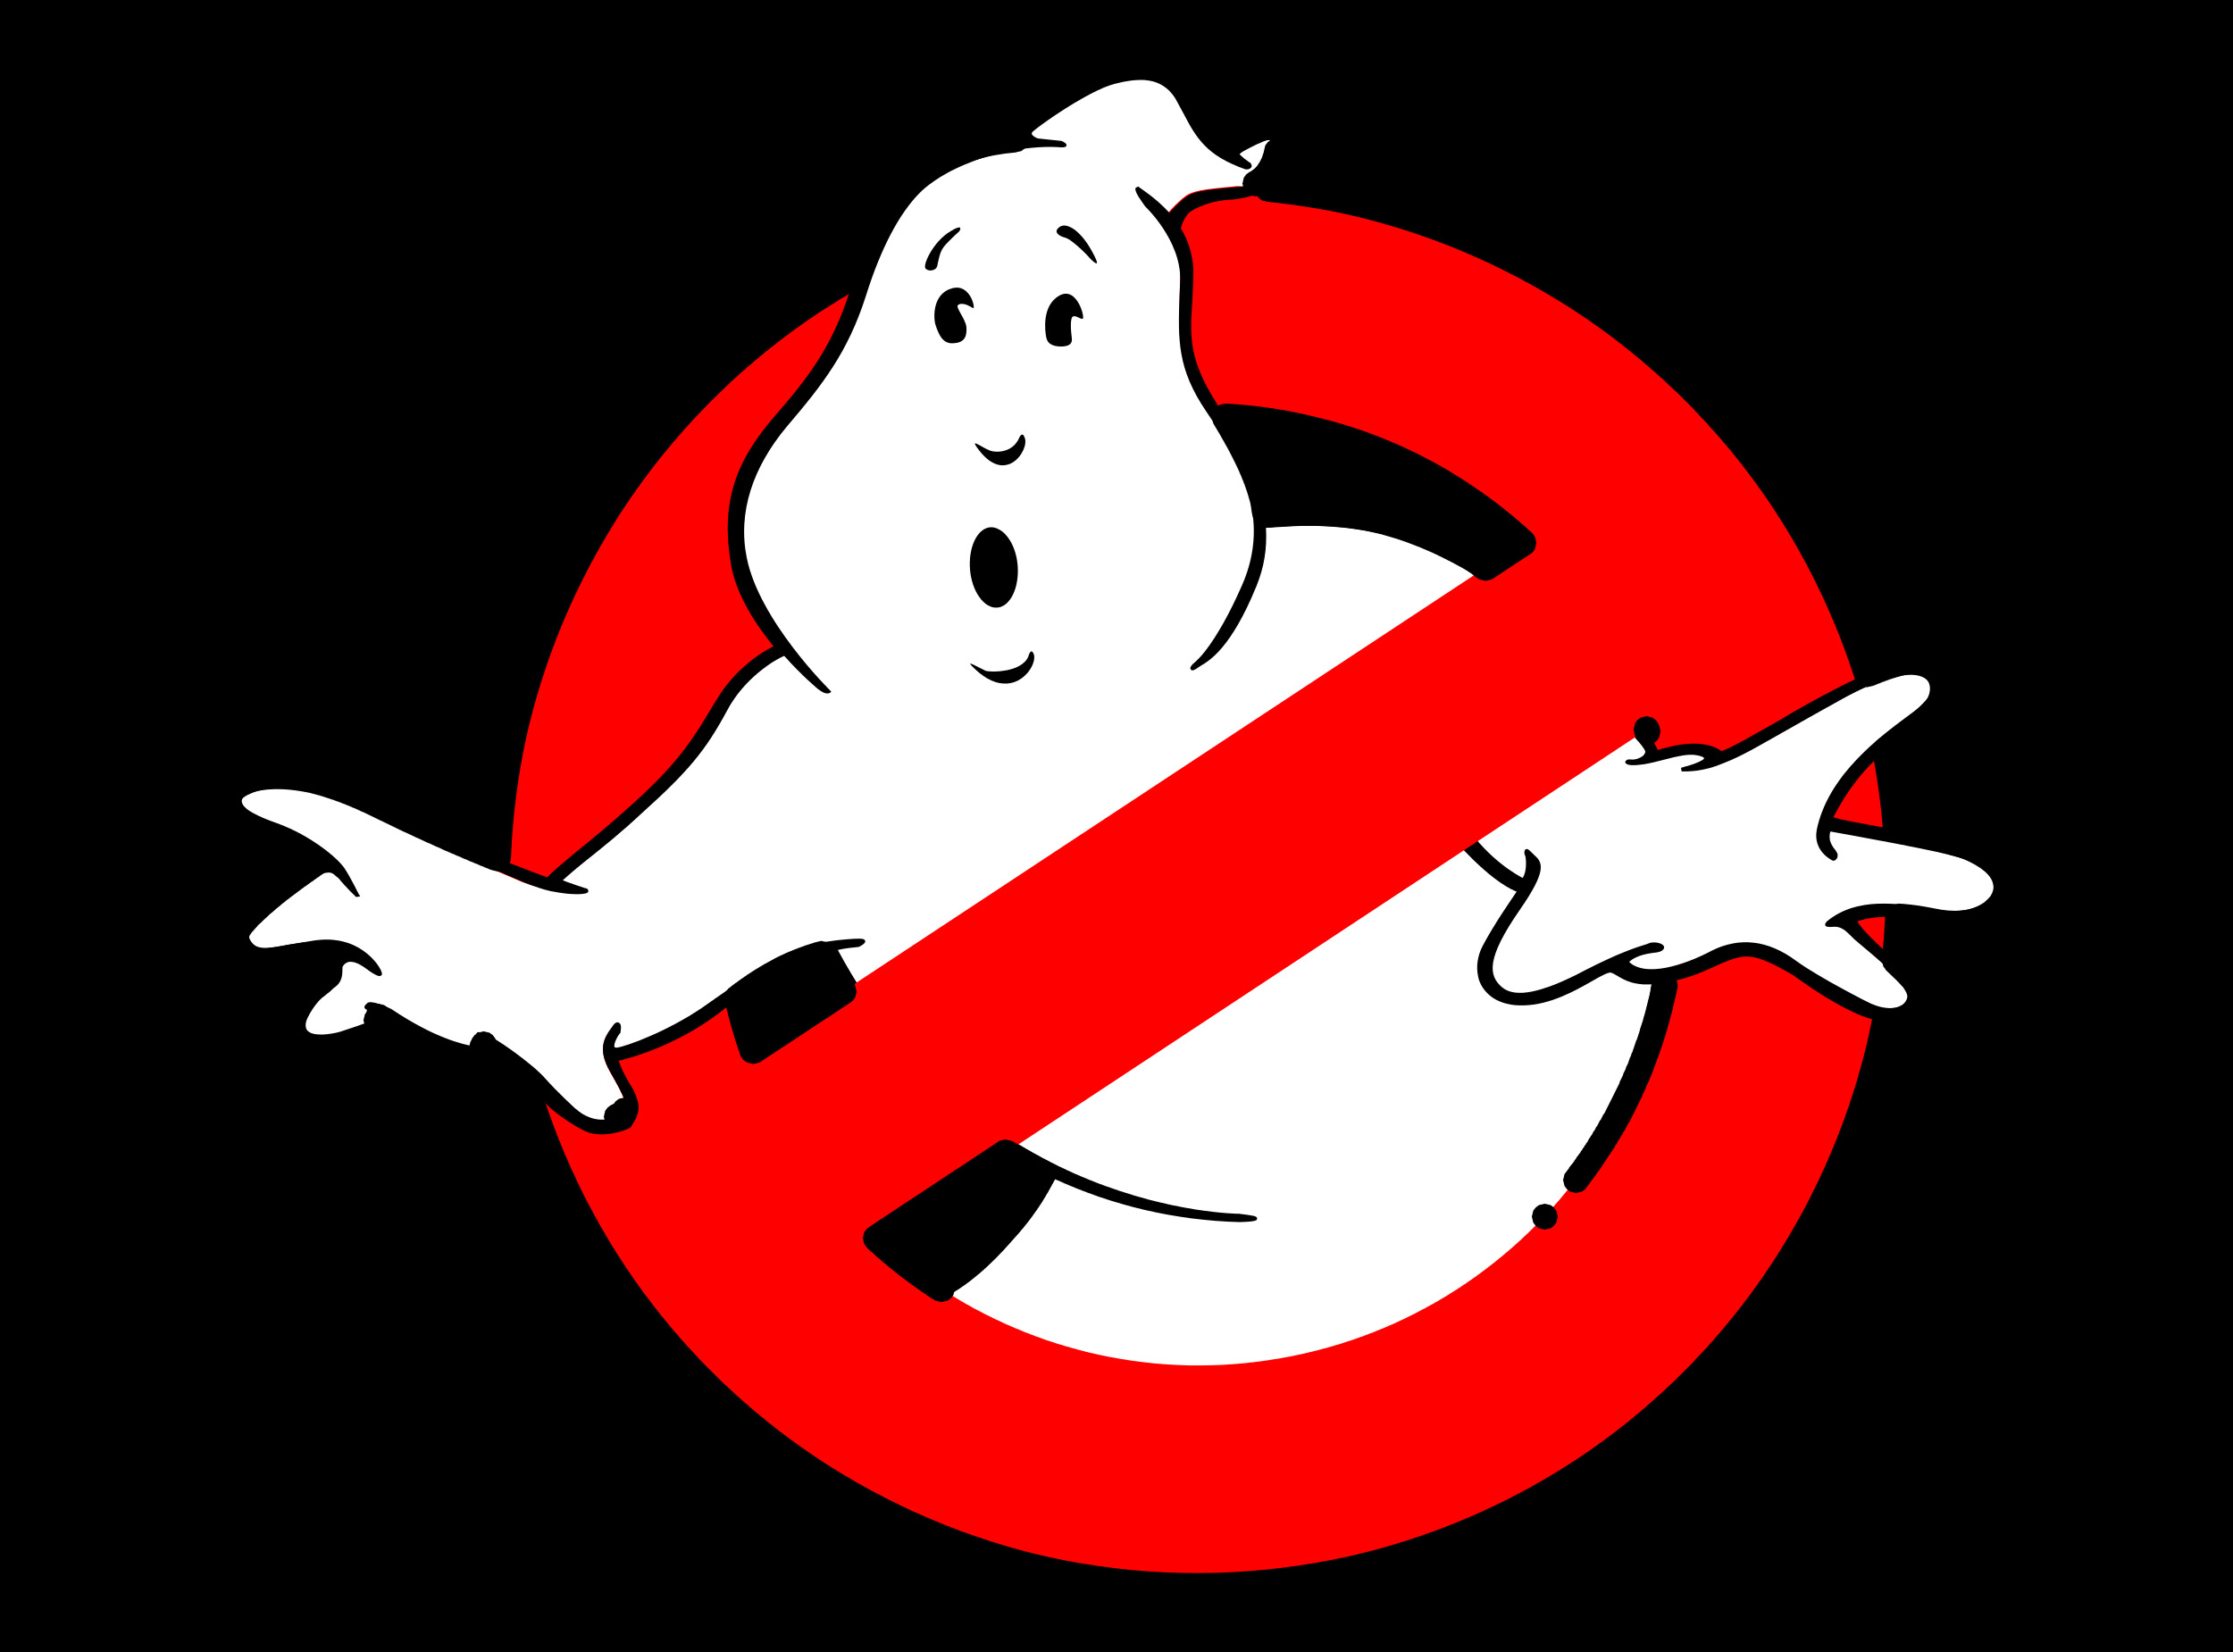 Resultado de imagem para ghostbusters logo